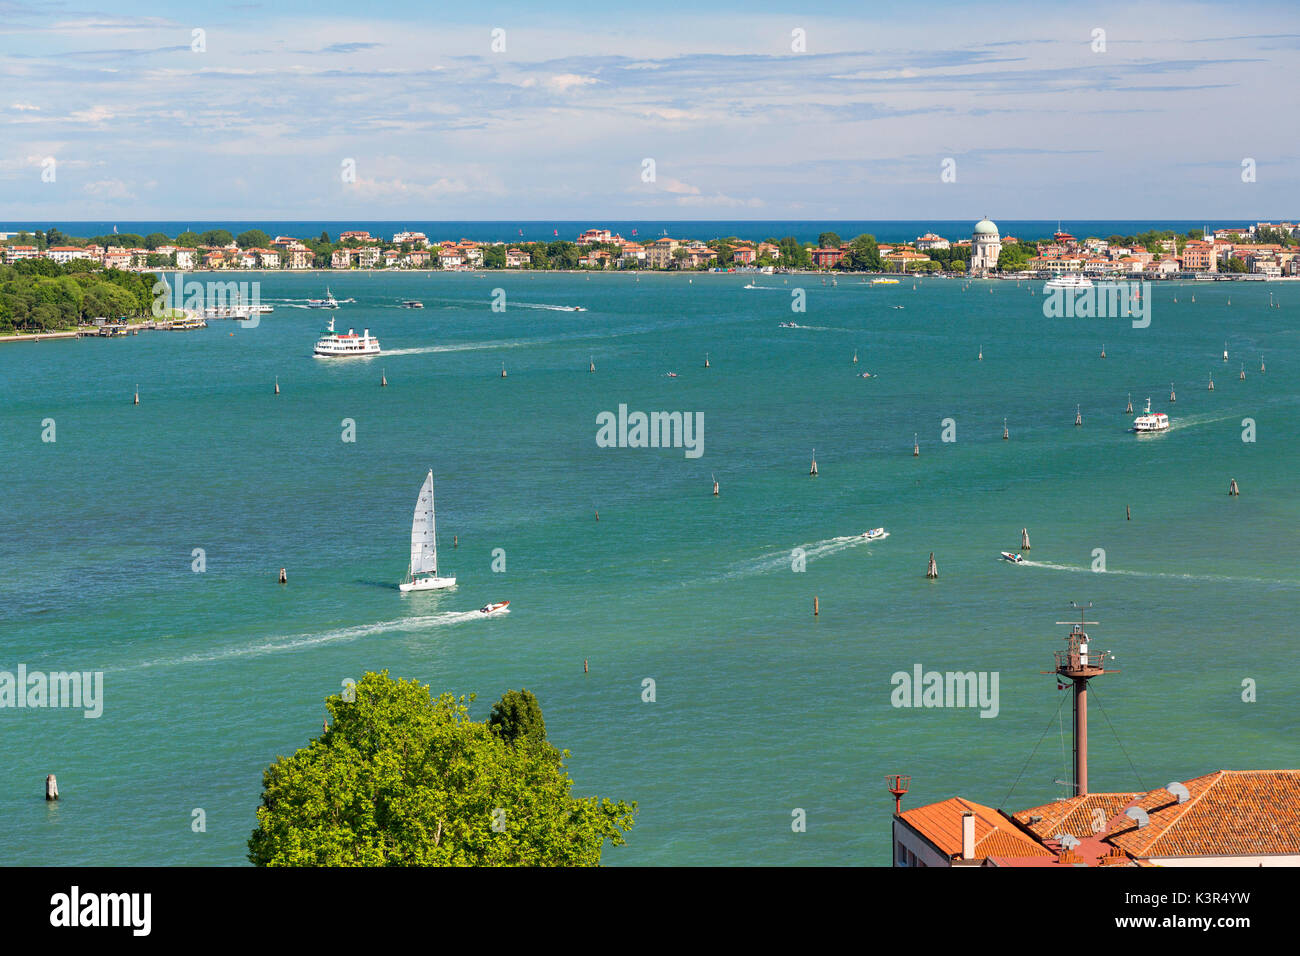 View of Lido Venice from San Giorgio Maggiore. Venice, Veneto, Italy. Stock Photo